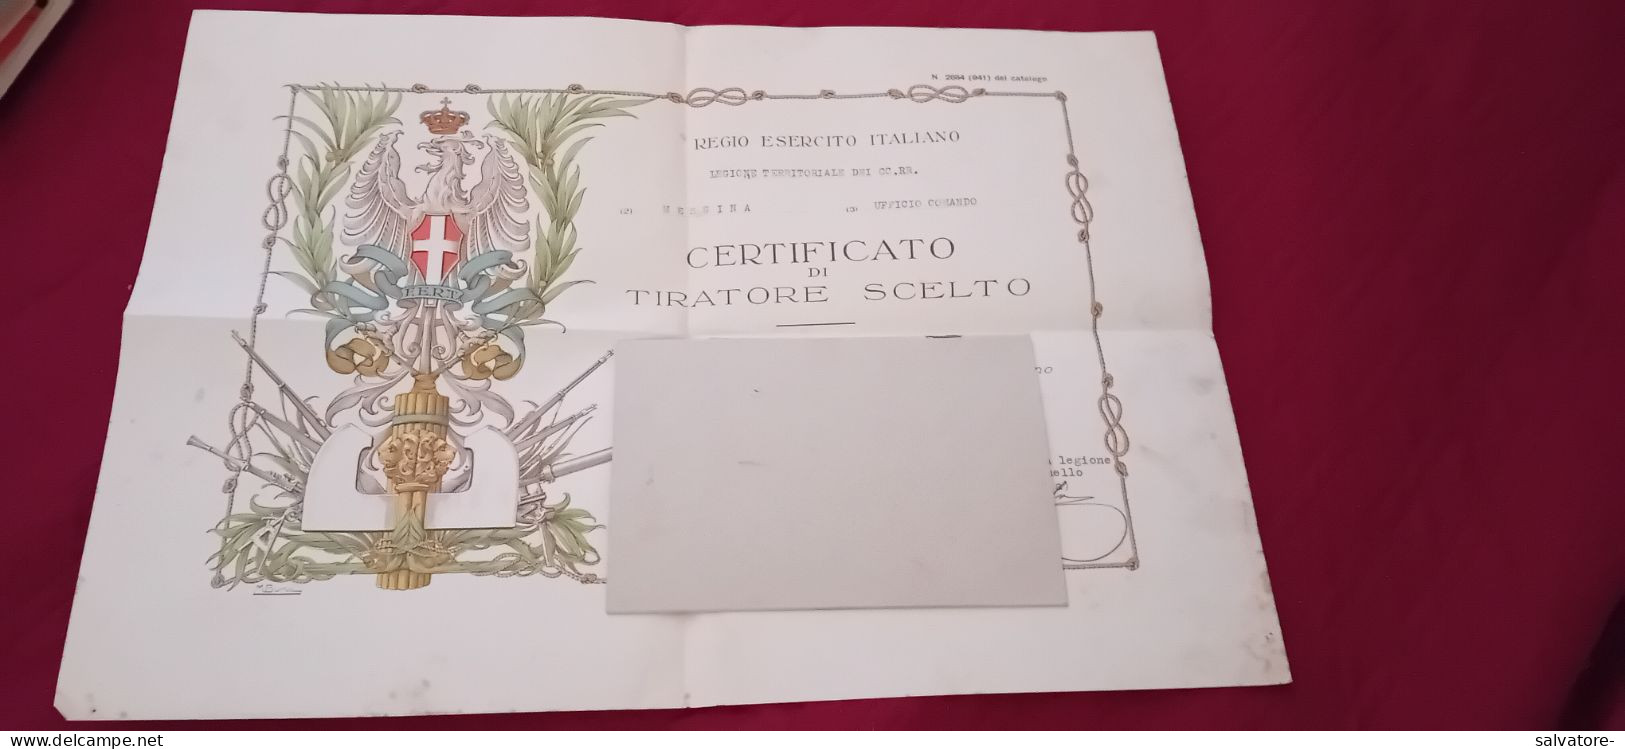 ATTESTATO TIRATORE SCELTO CARABINIERI REALI  1936 - Historical Documents